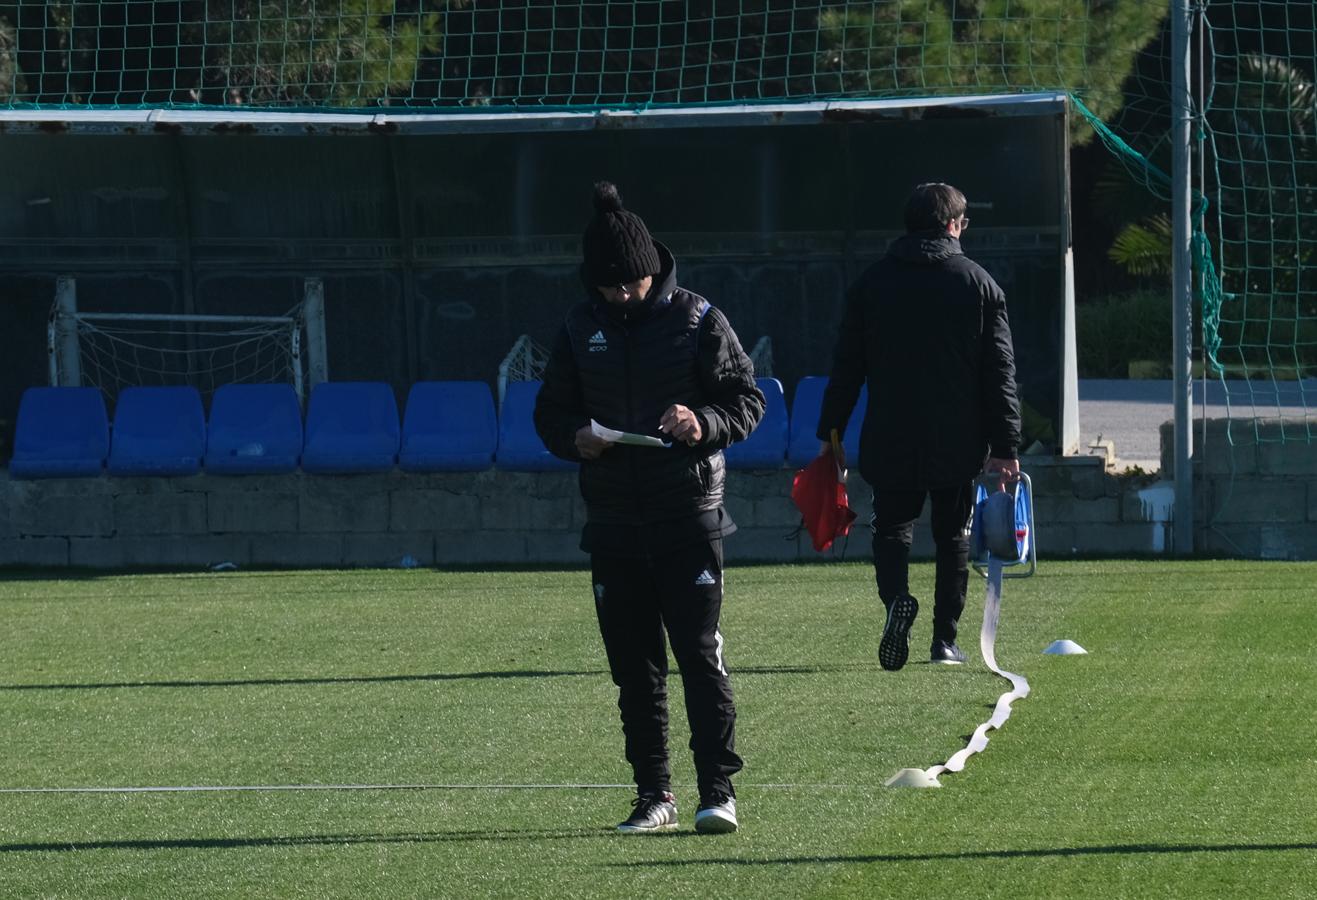 FOTOS: El entrenamiento del Cádiz CF, en imágenes